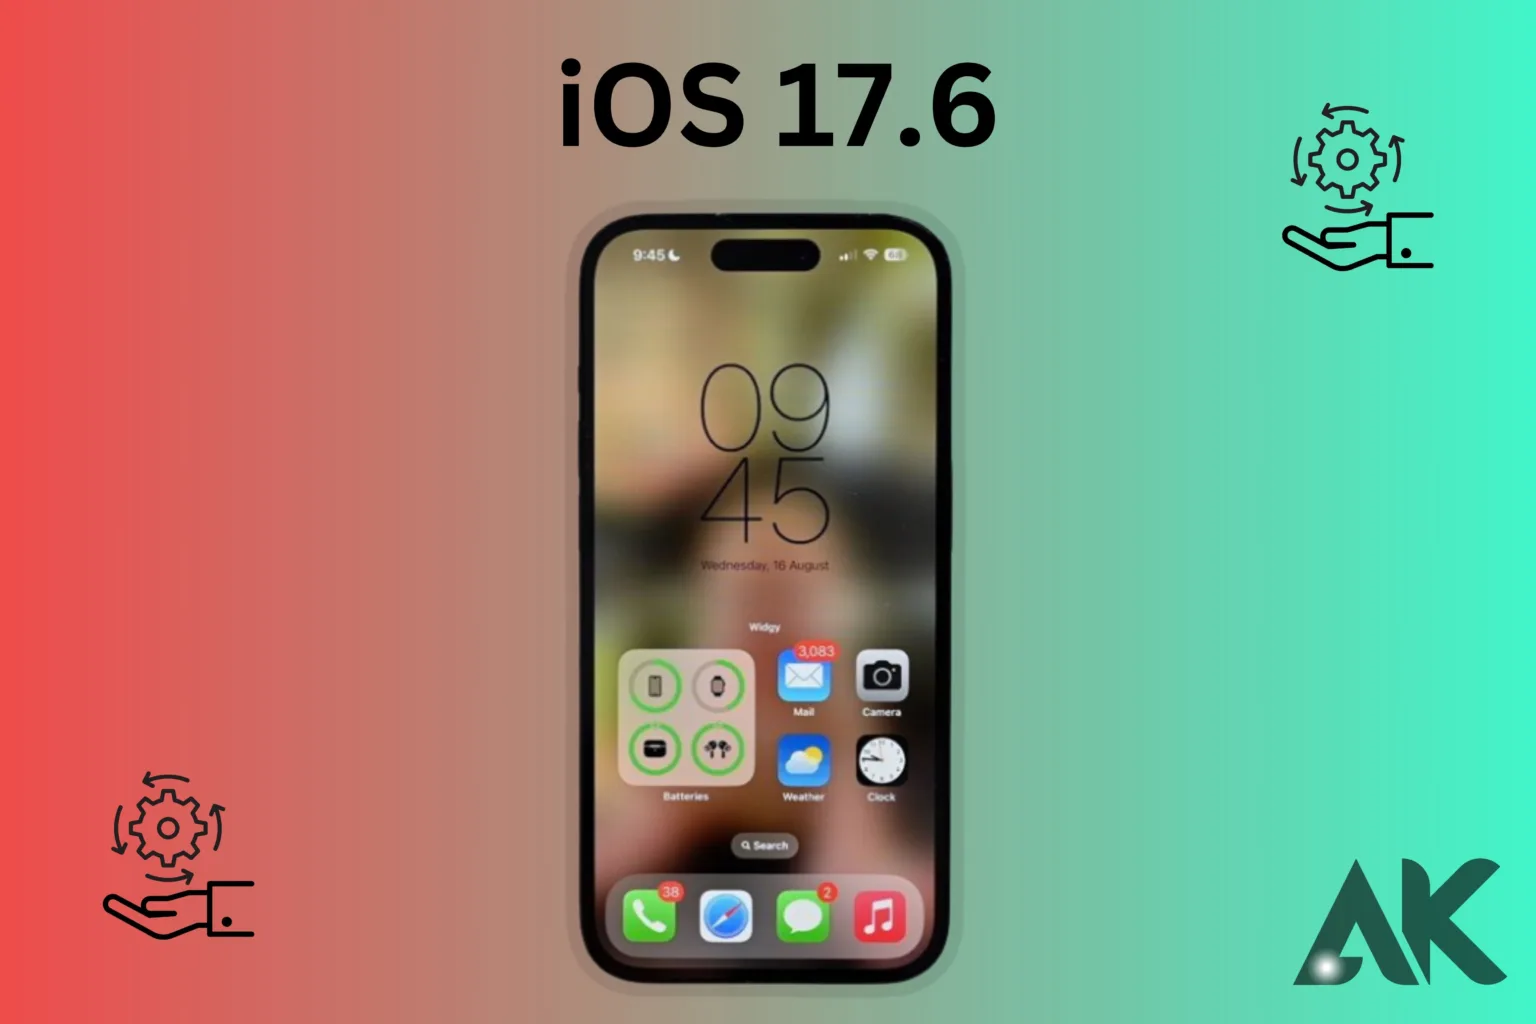 iOS 17.6 bugs